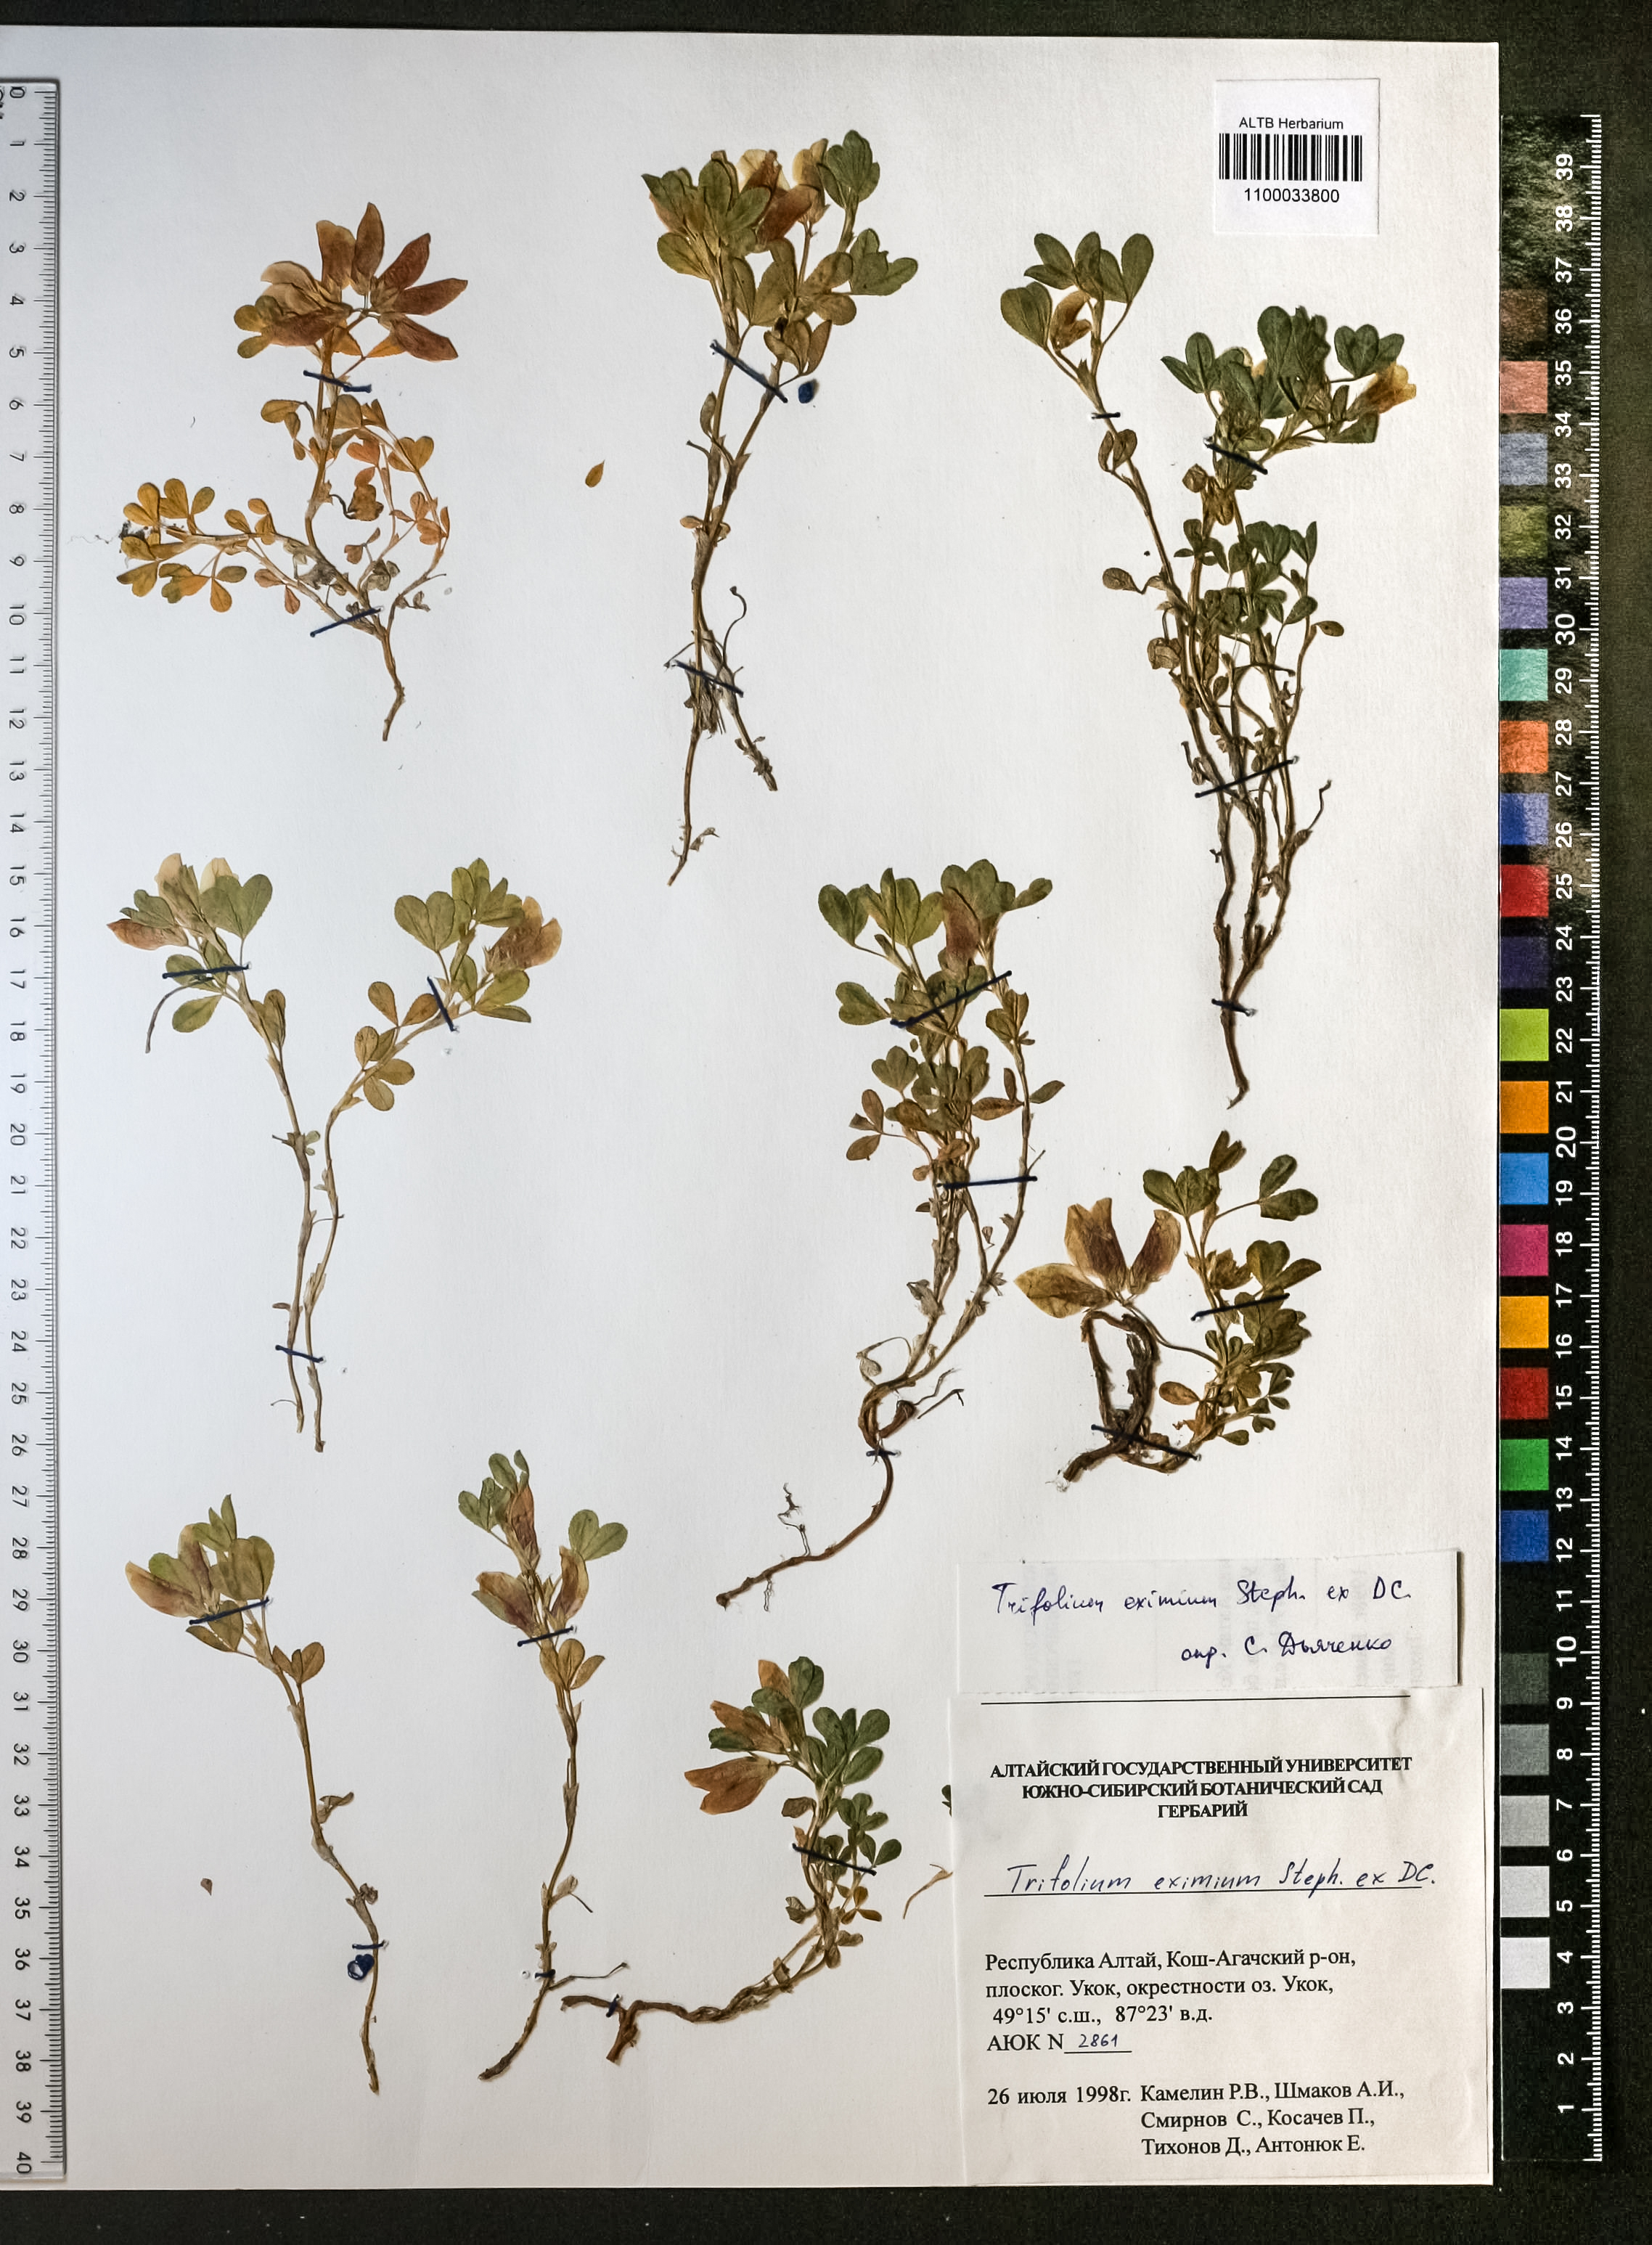 Trifolium eximium Steph. ex Ser.